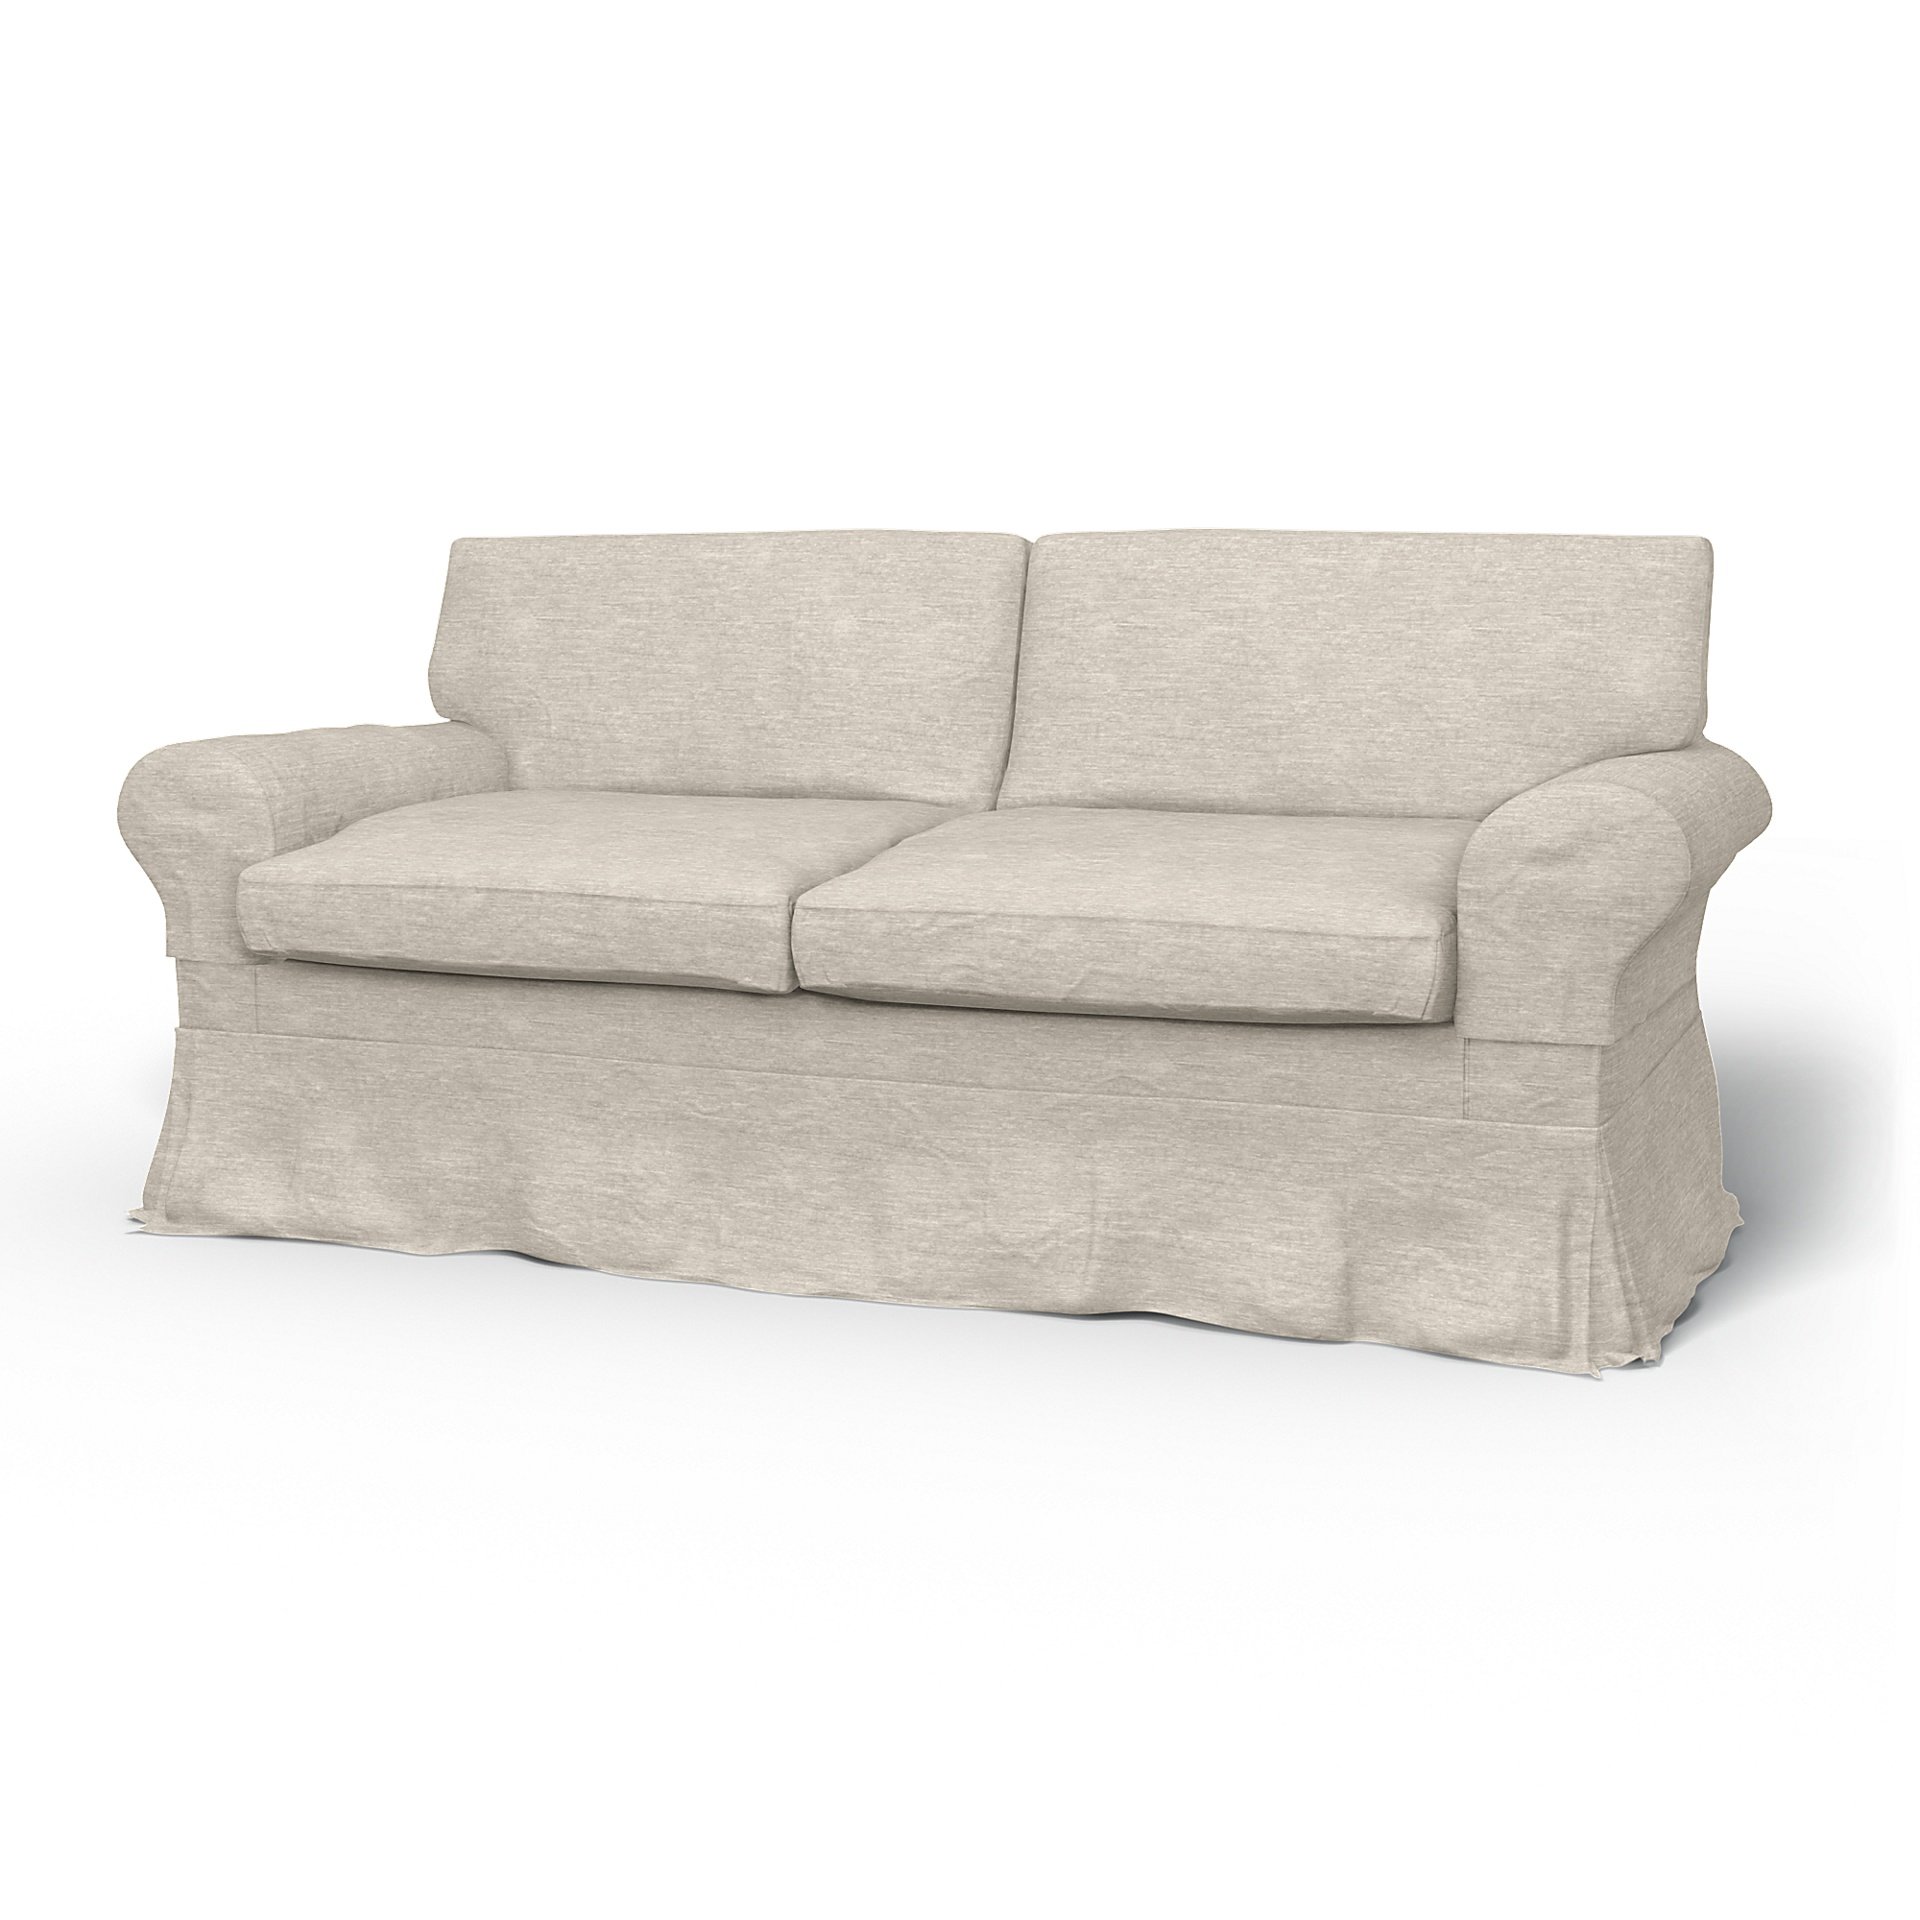 IKEA - Ektorp 2 Seater Sofa Bed Cover, Natural White, Velvet - Bemz